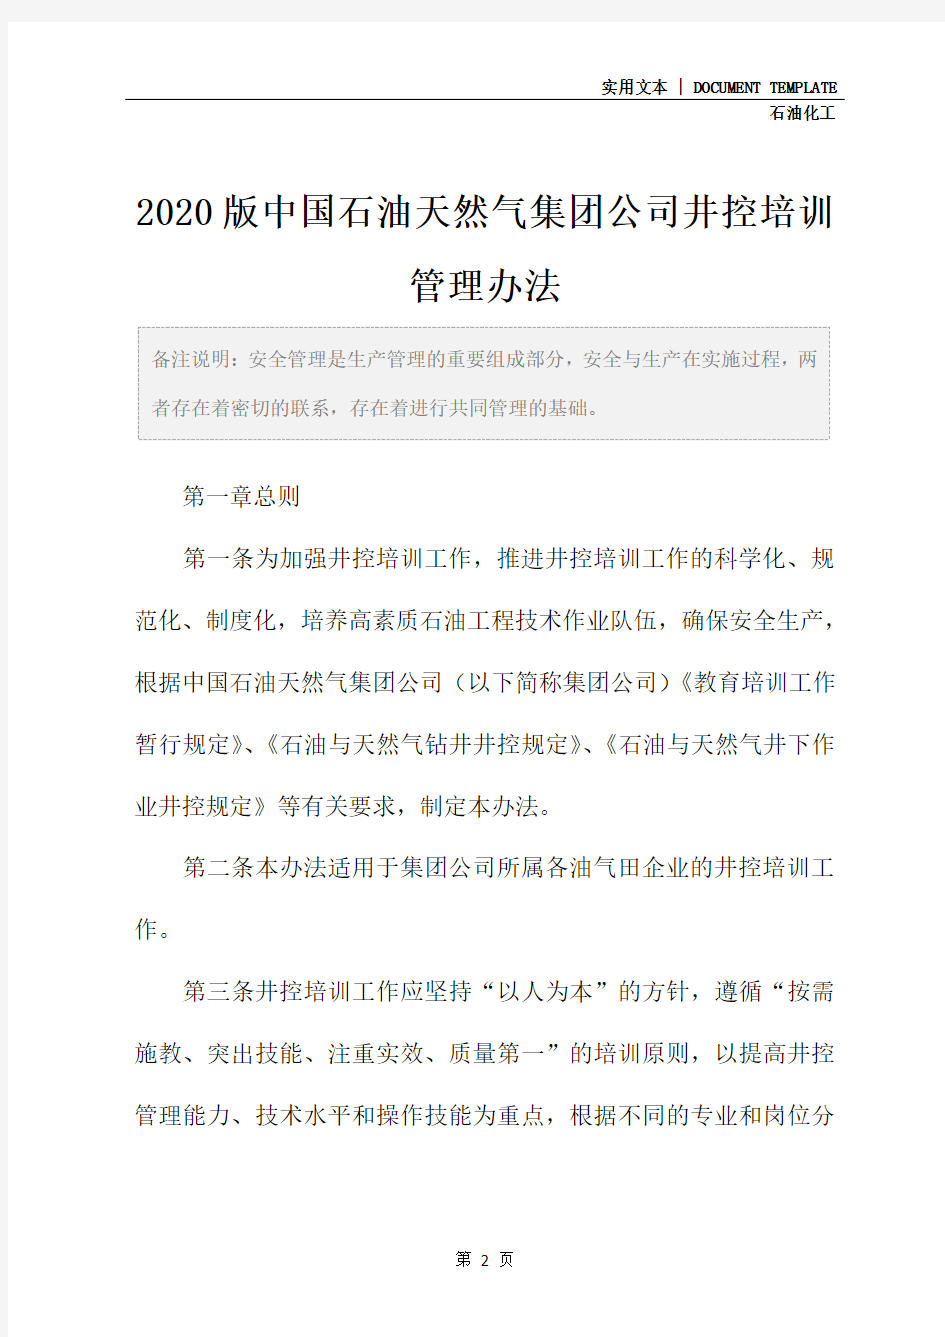 2020版中国石油天然气集团公司井控培训管理办法